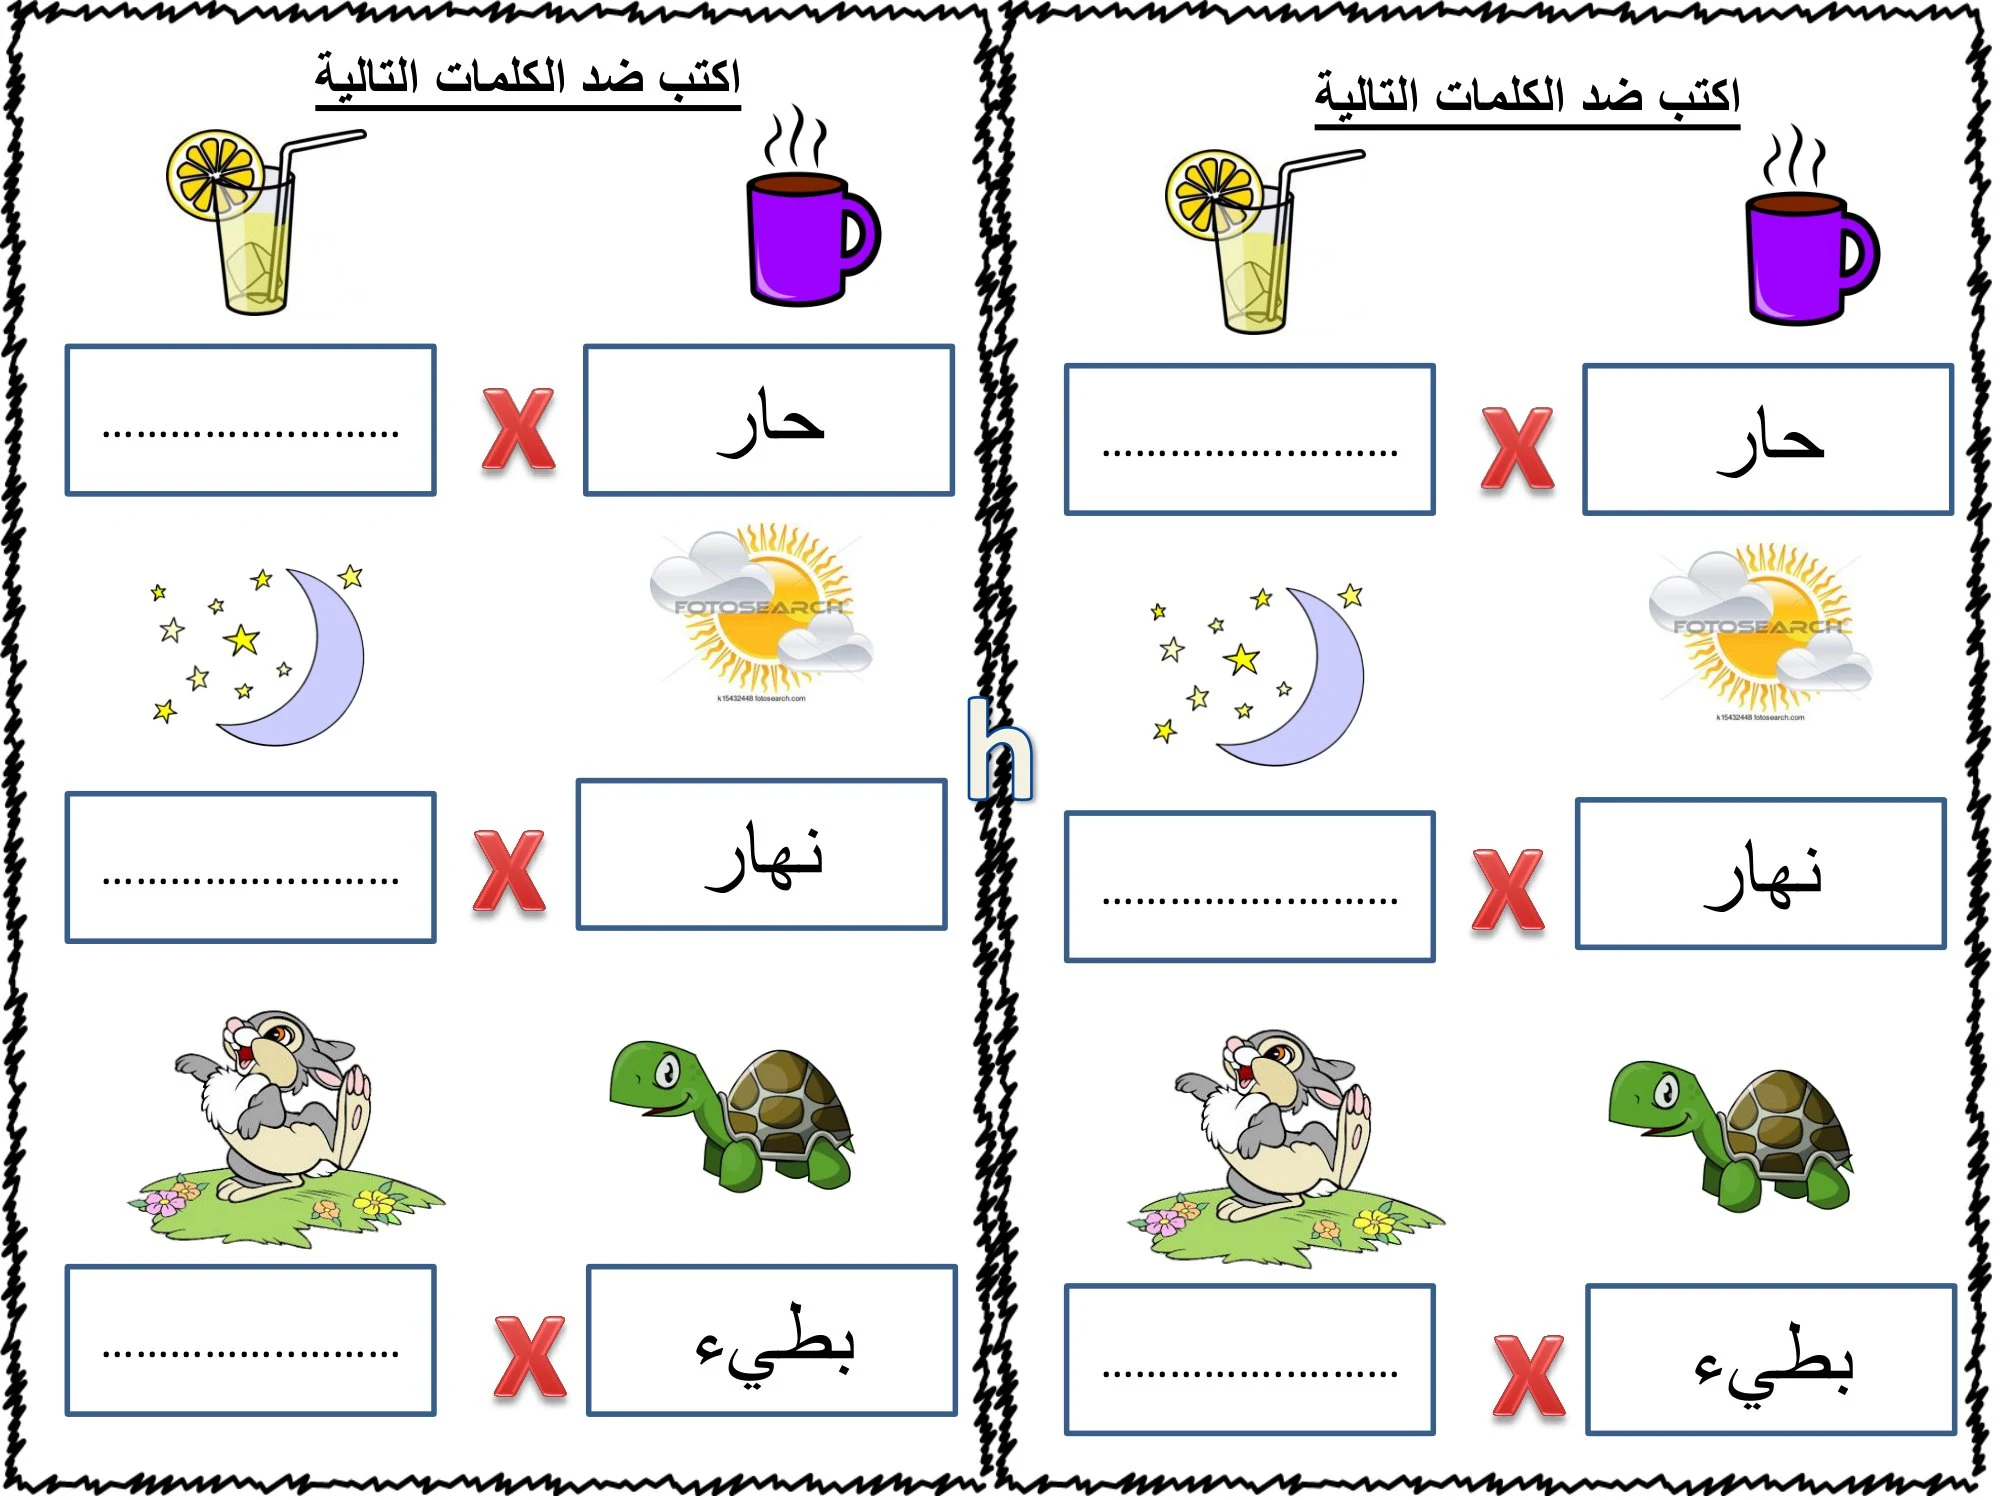 مذكرة لمراجعة حروف اللغة العربية للصف الأول الابتدائي pdf